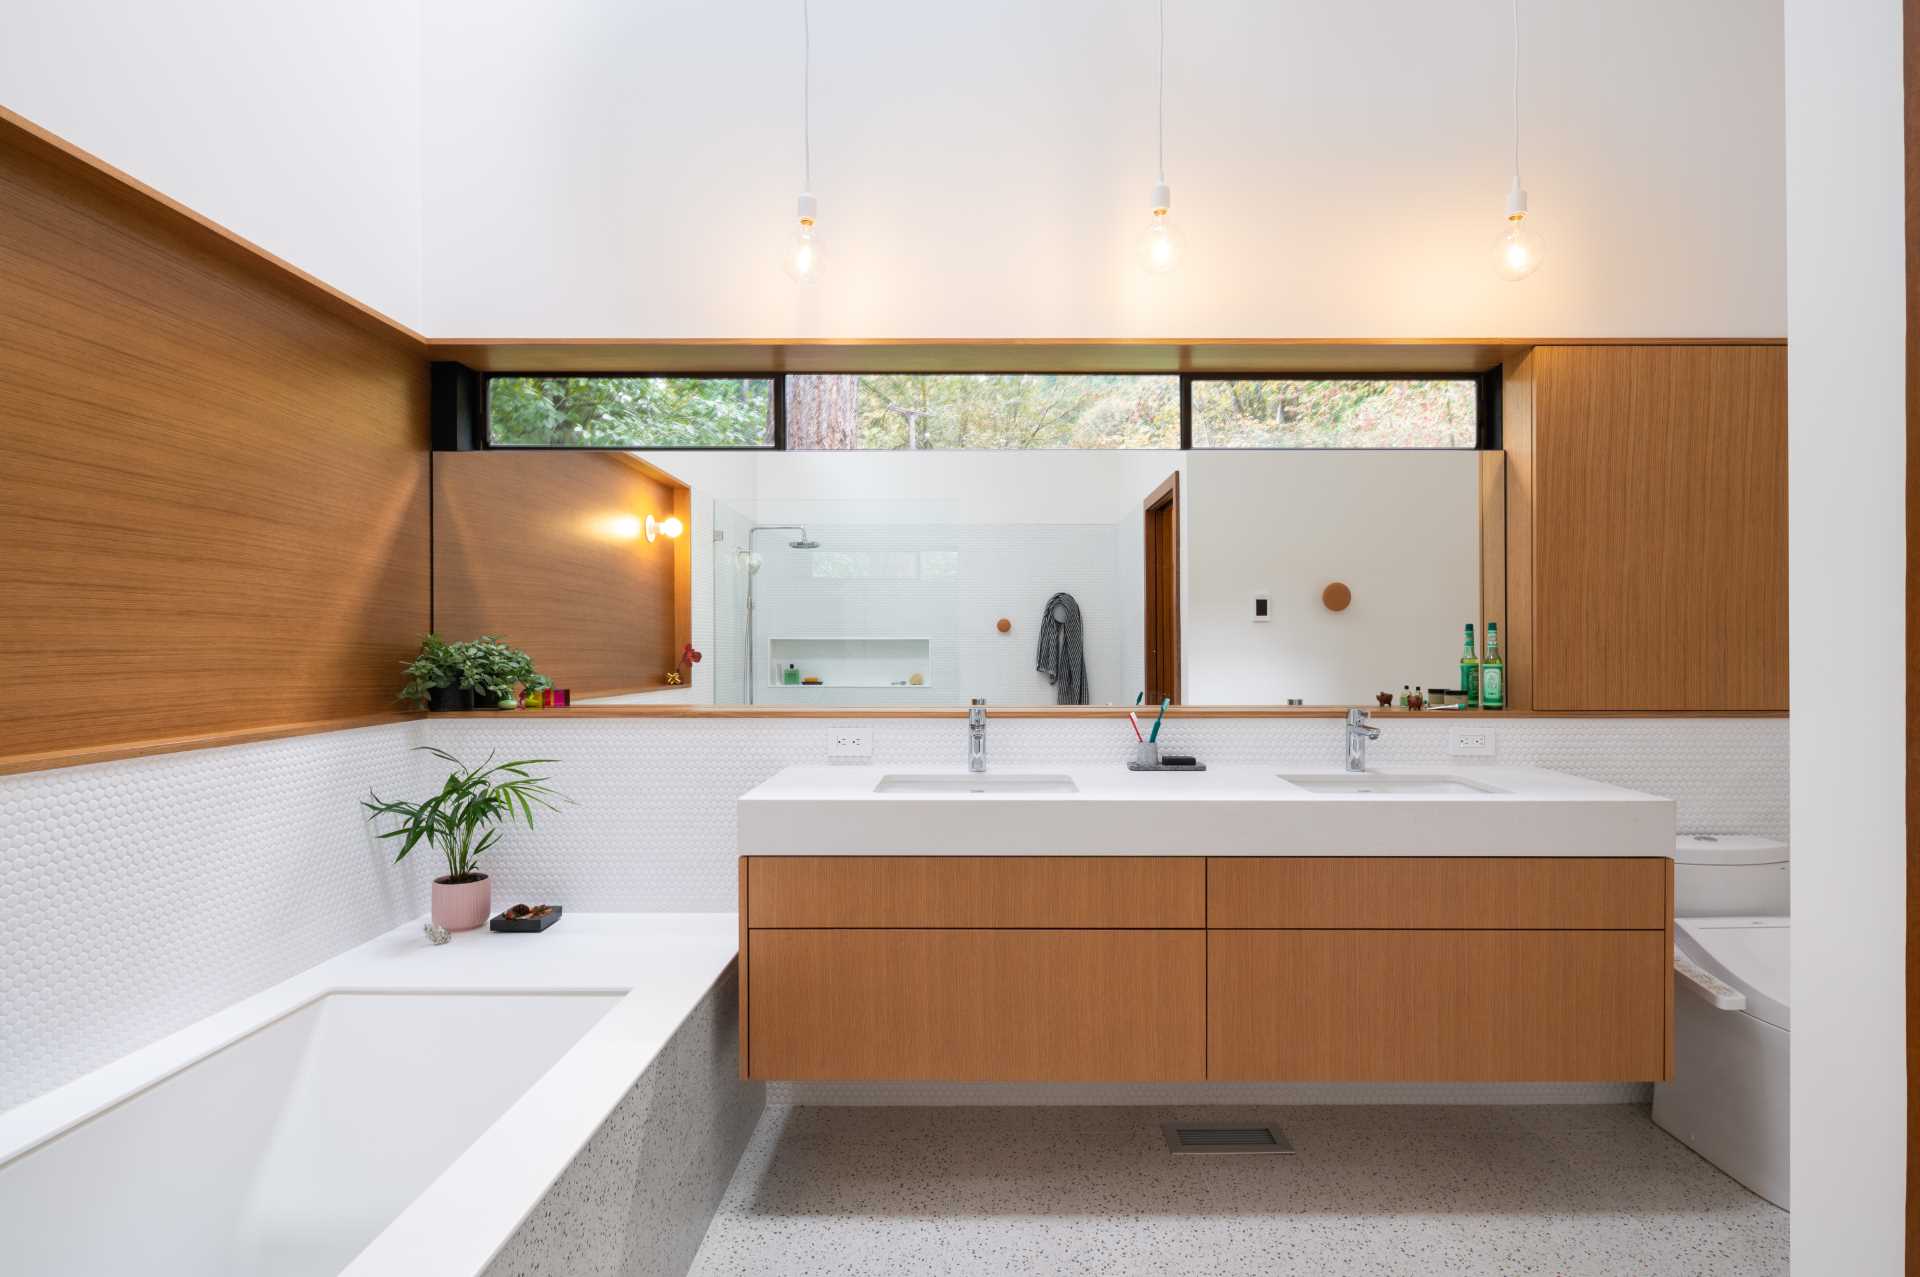 یک حمام مدرن با دیوارهای پوشیده از کاشی‌های پنی سفید، یک وان حمام توکار، دوش با طاقچه قفسه‌بندی، و جزئیات چوبی پیچیده‌شده برای مطابقت با روشویی دوتایی.